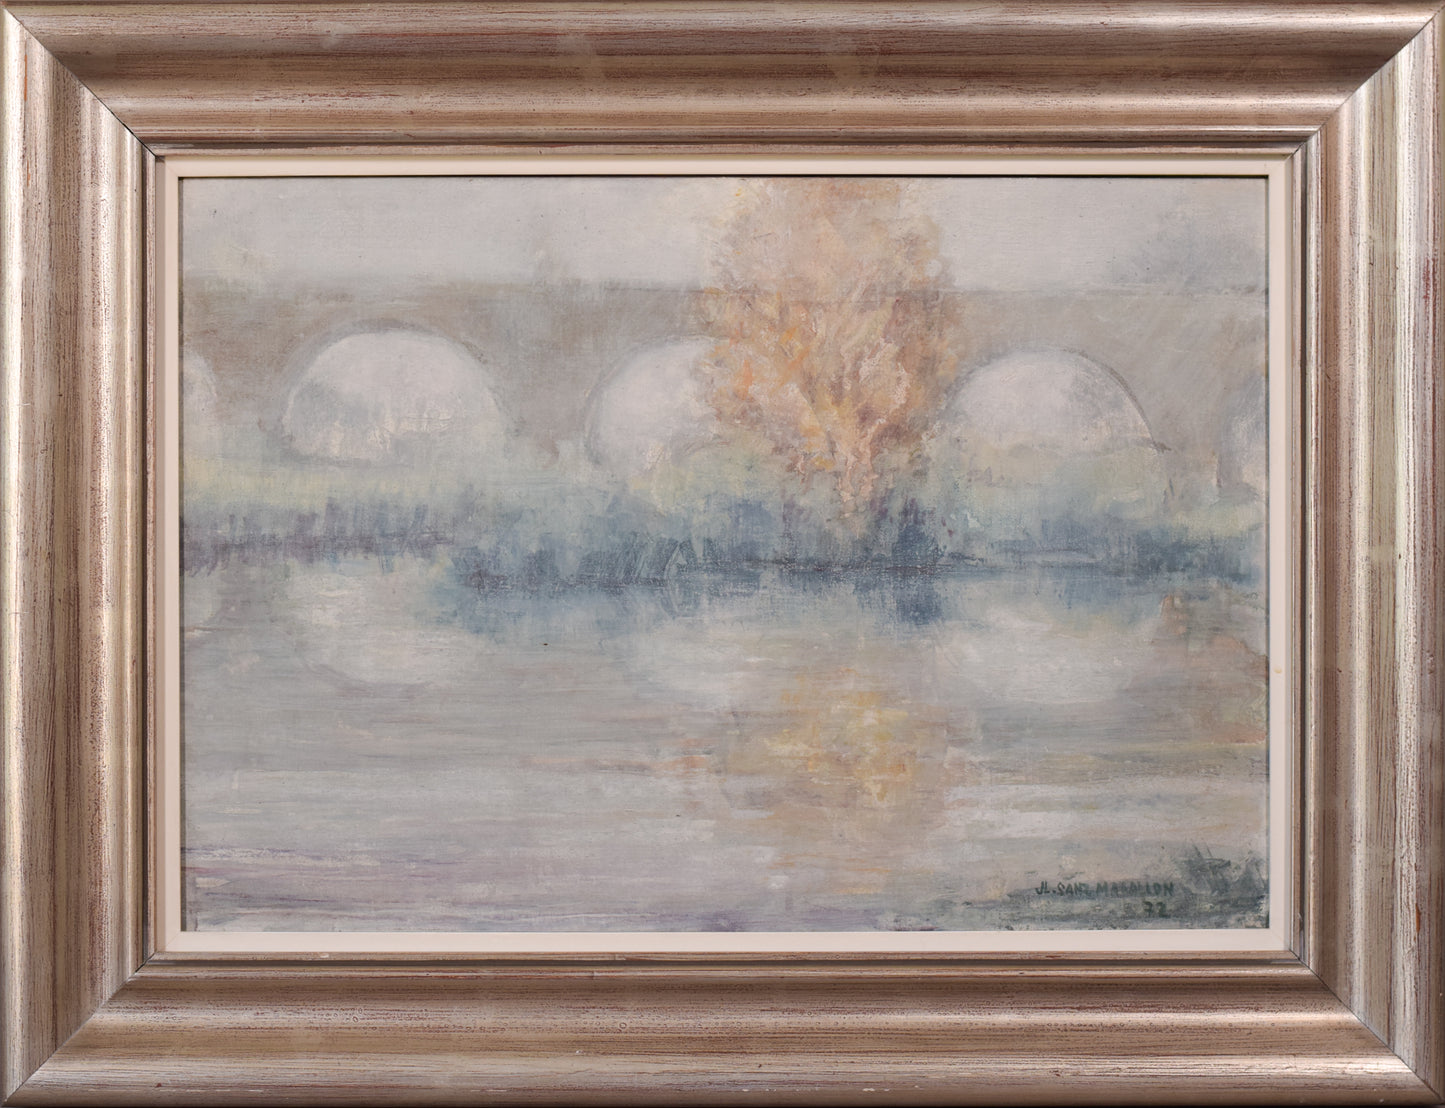 José Luis Sanz Magallon - Impressionist River Scene